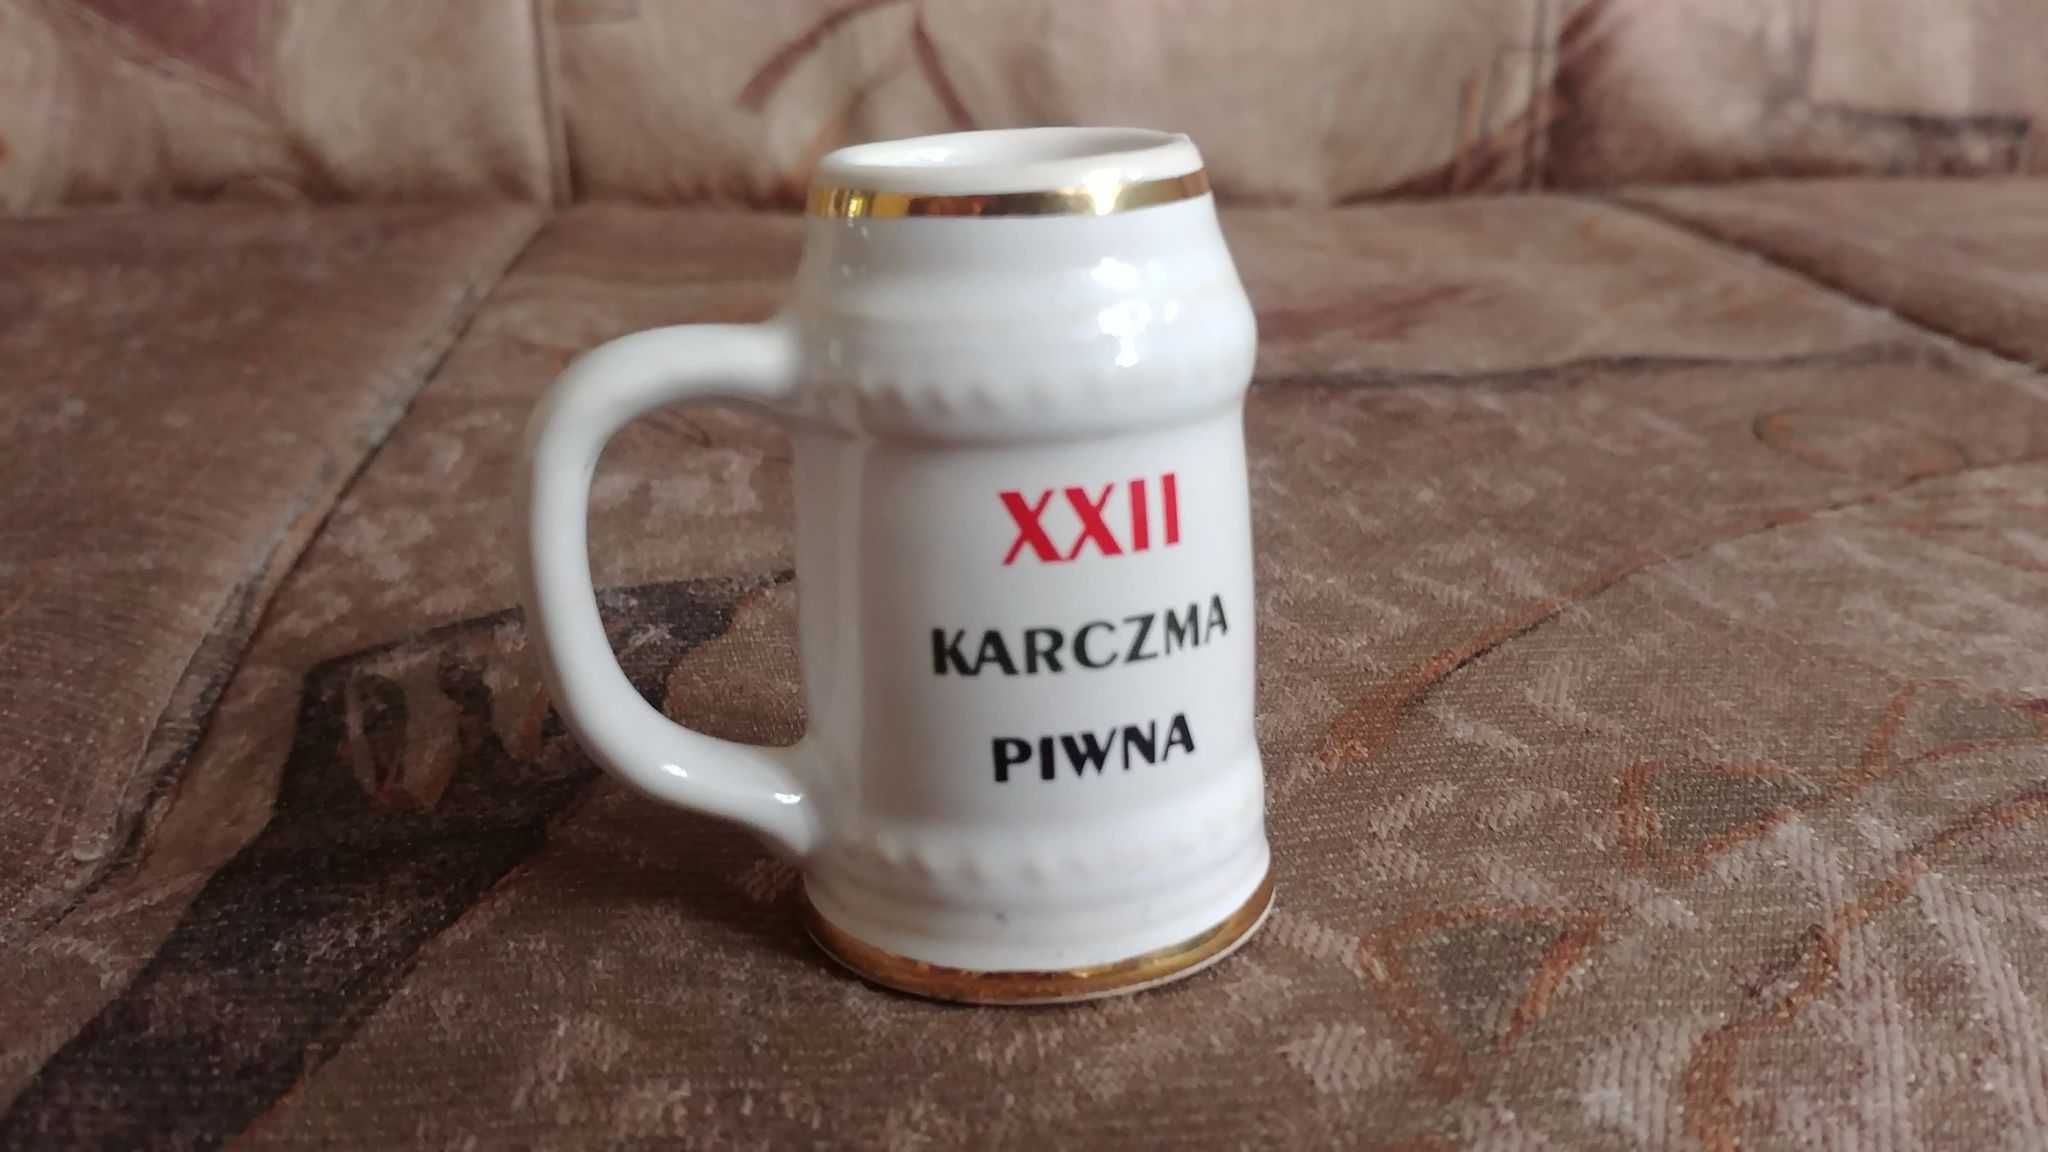 Kufel Mały xxii karczma piwna kwk wesoła Nszz solidarność Bardoń